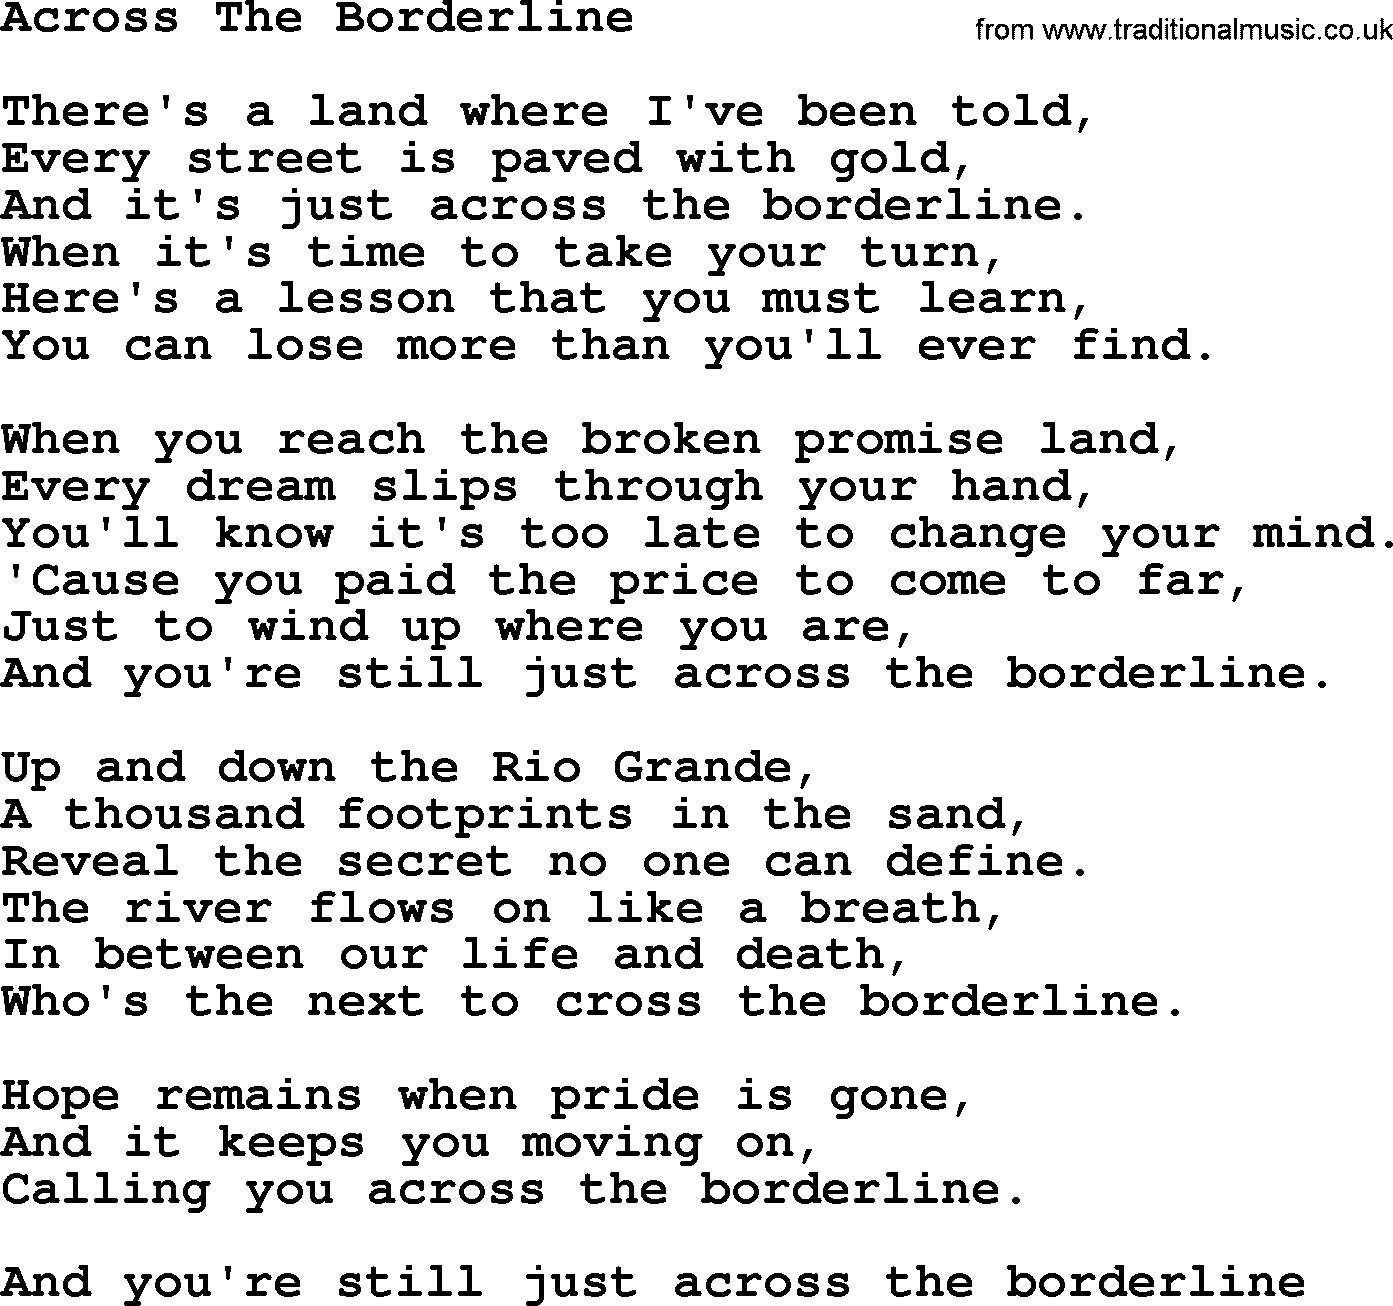 Willie Nelson song: Across The Borderline lyrics